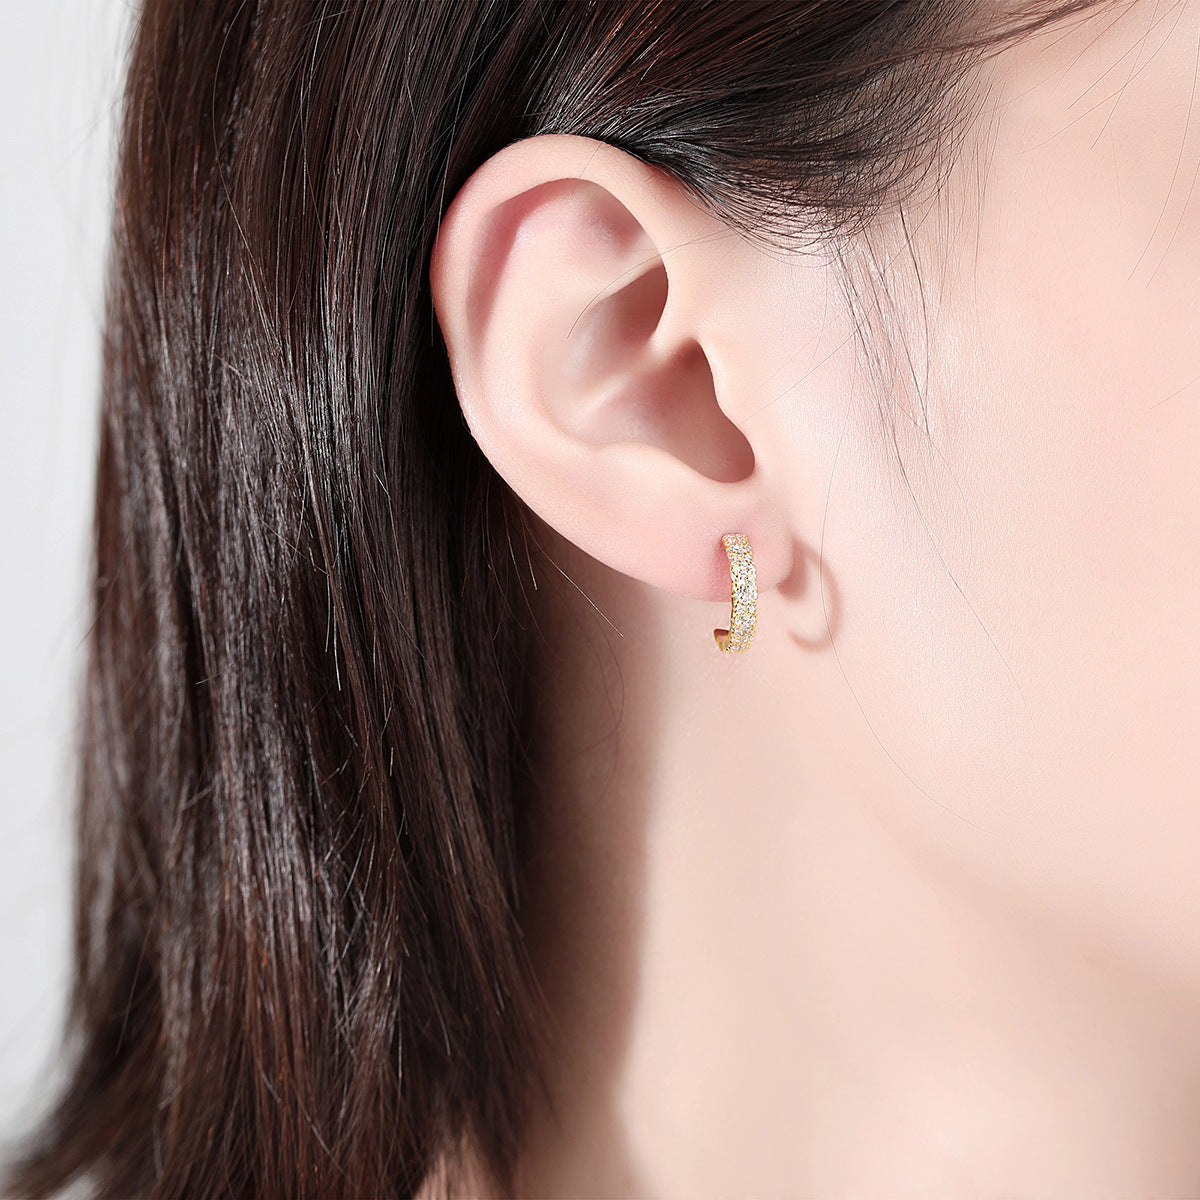 Fashionable micro stud earrings